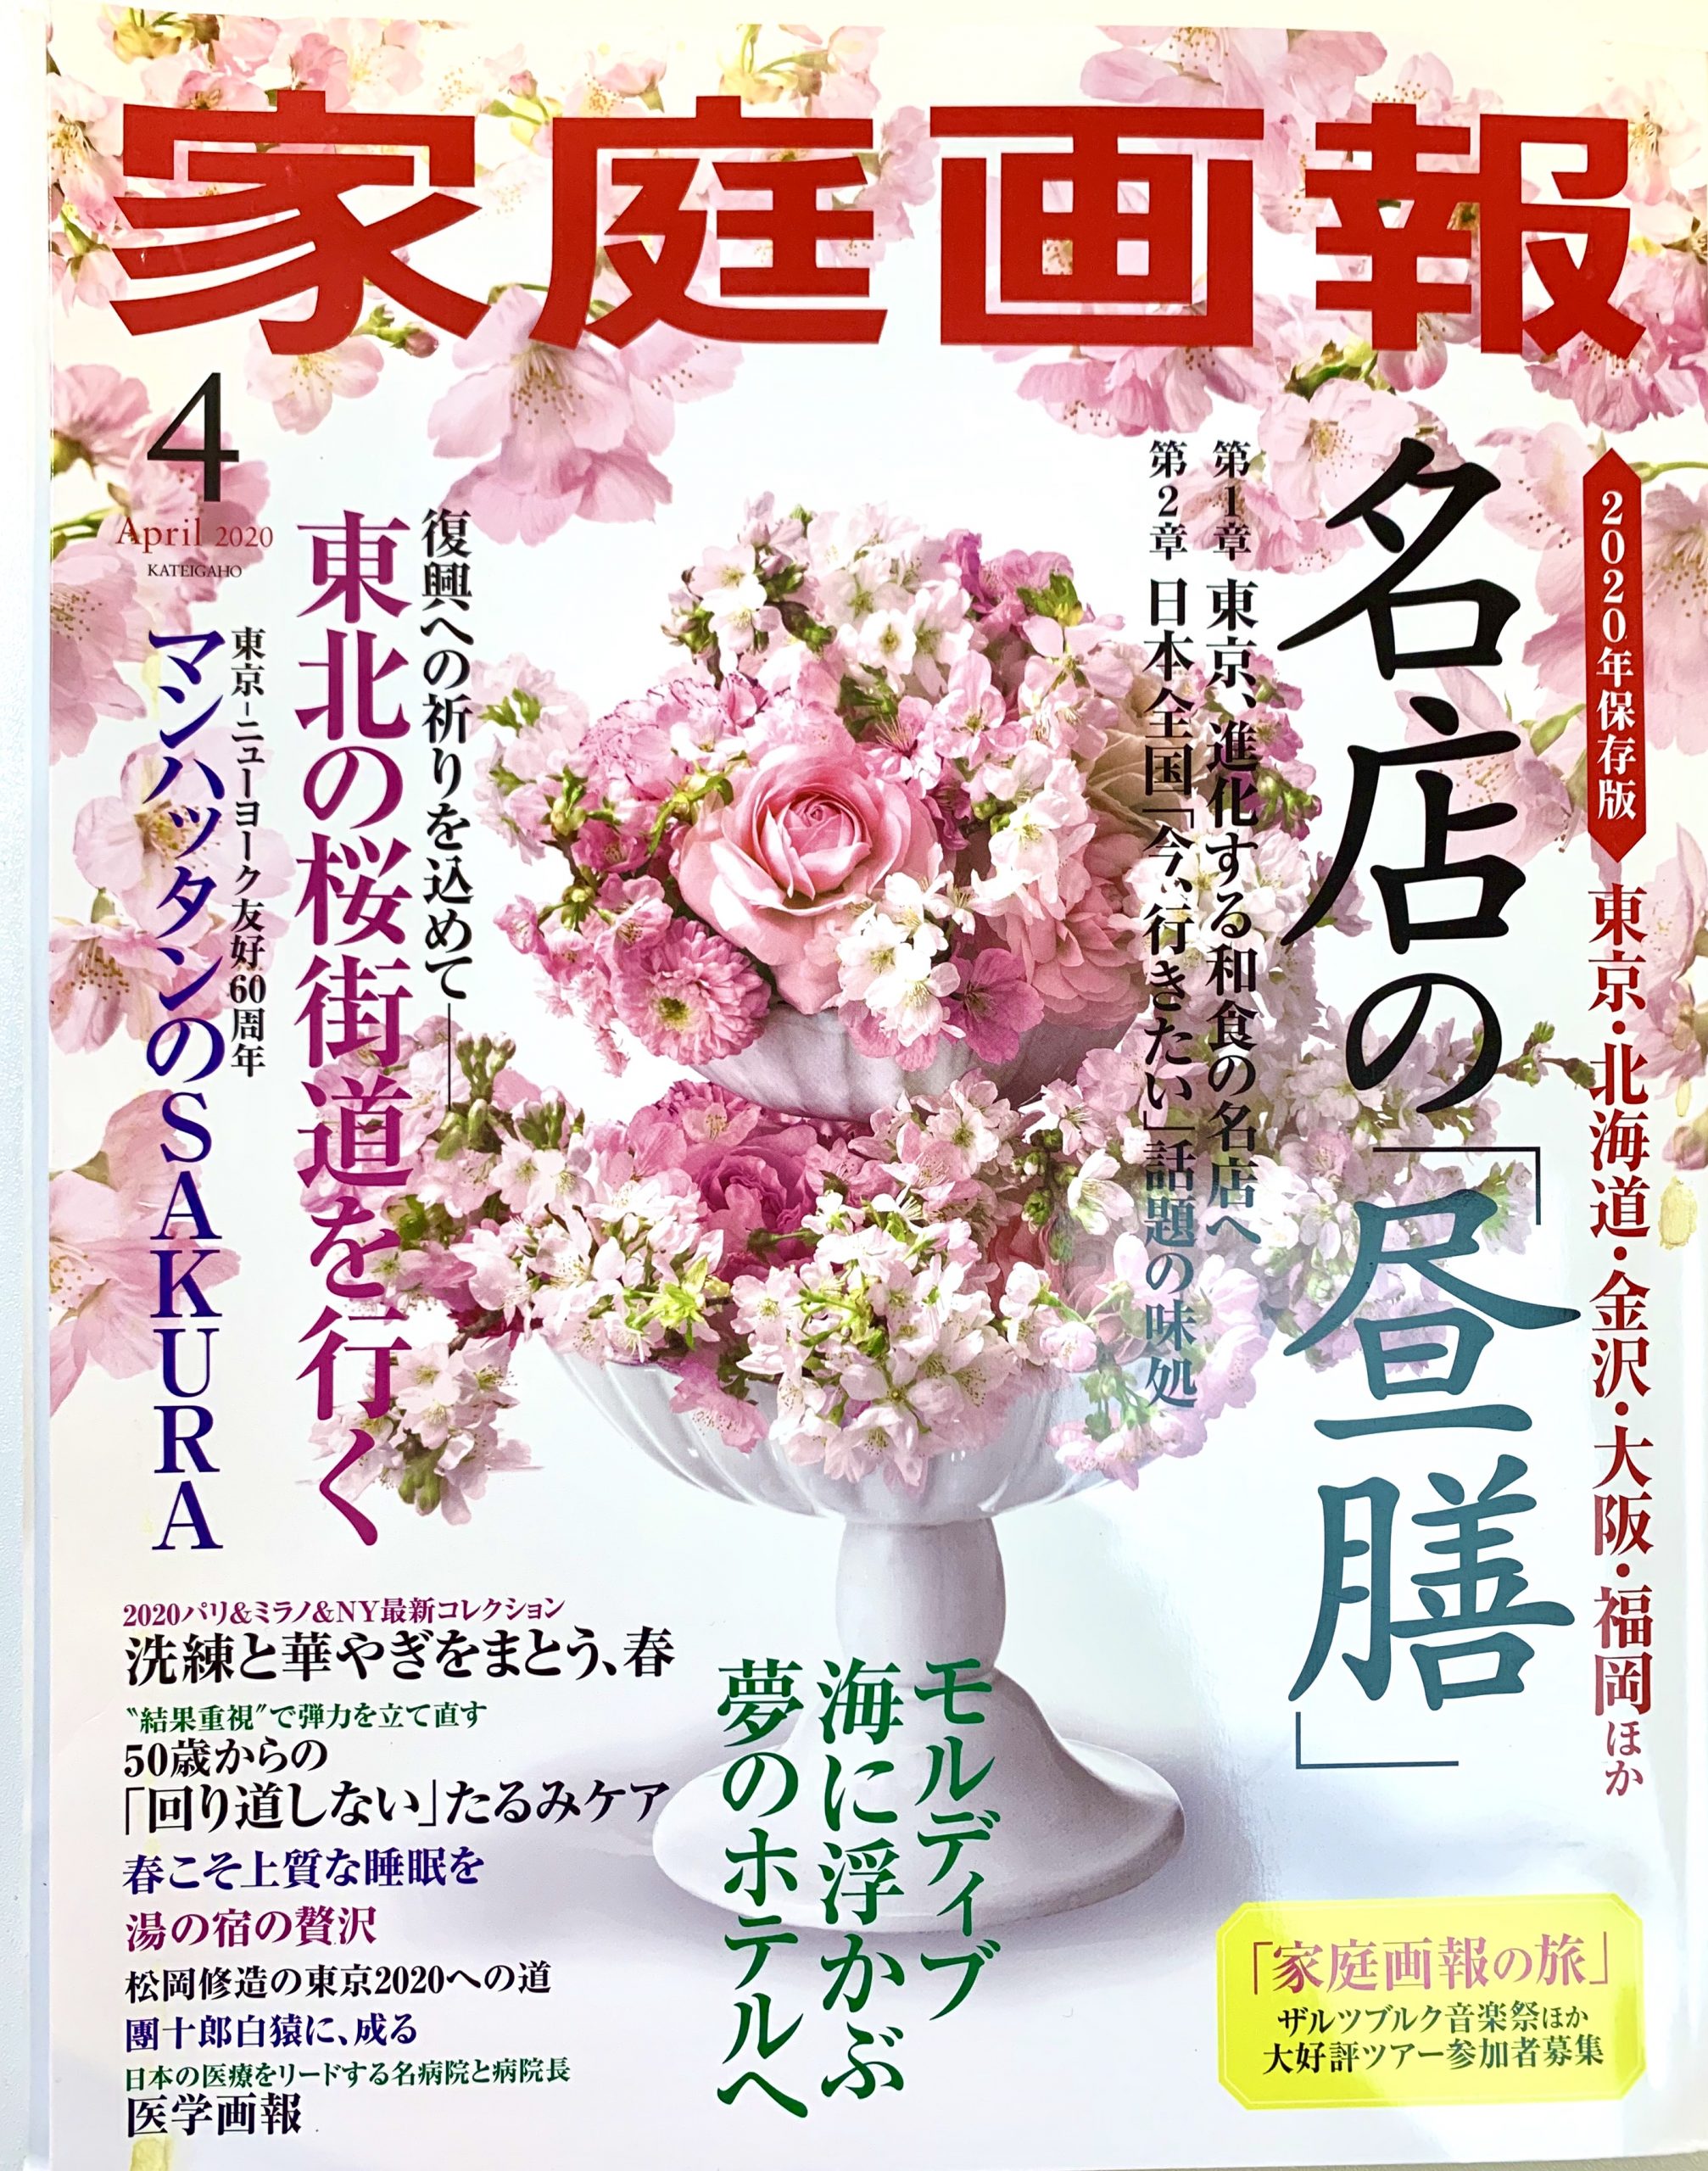 2月29日発売「家庭画報」4月号にミスキョウコが掲載されました。